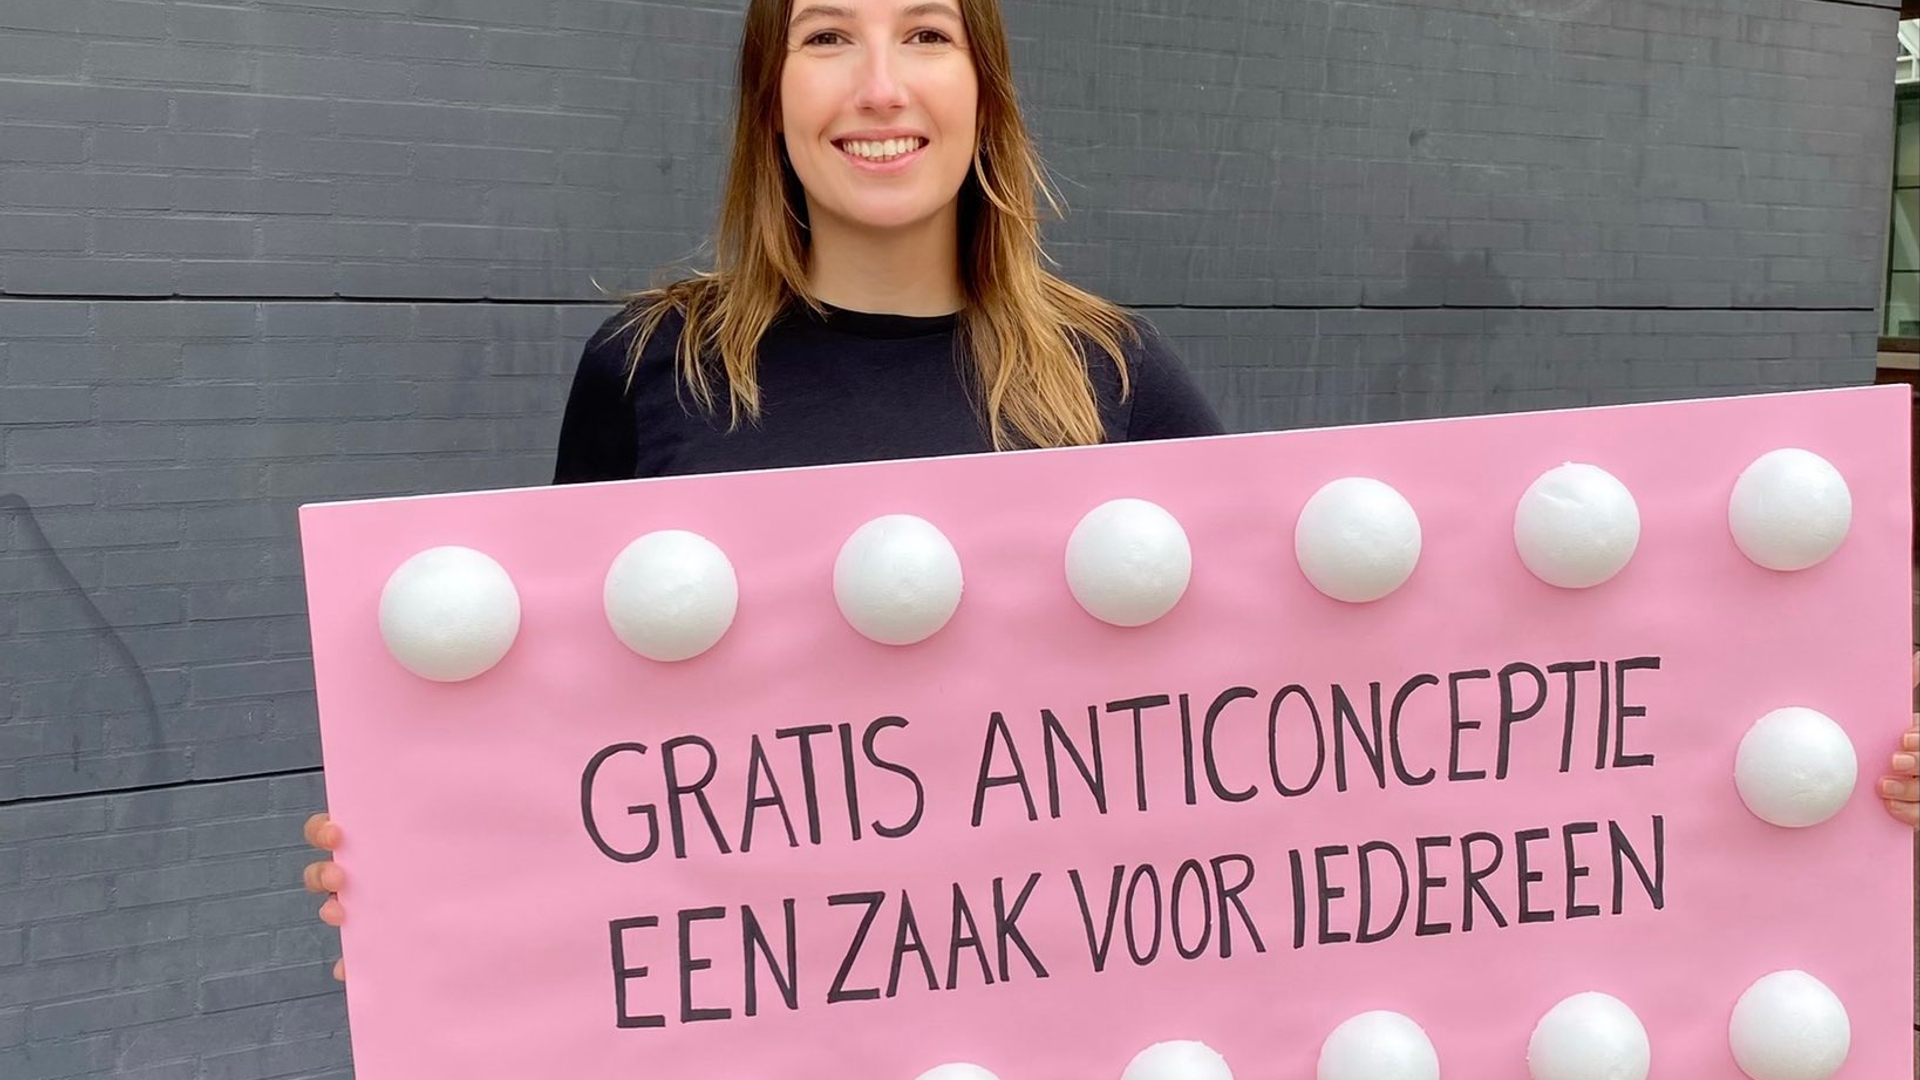 'Gratis anticonceptie, een zaak voor iedereen'